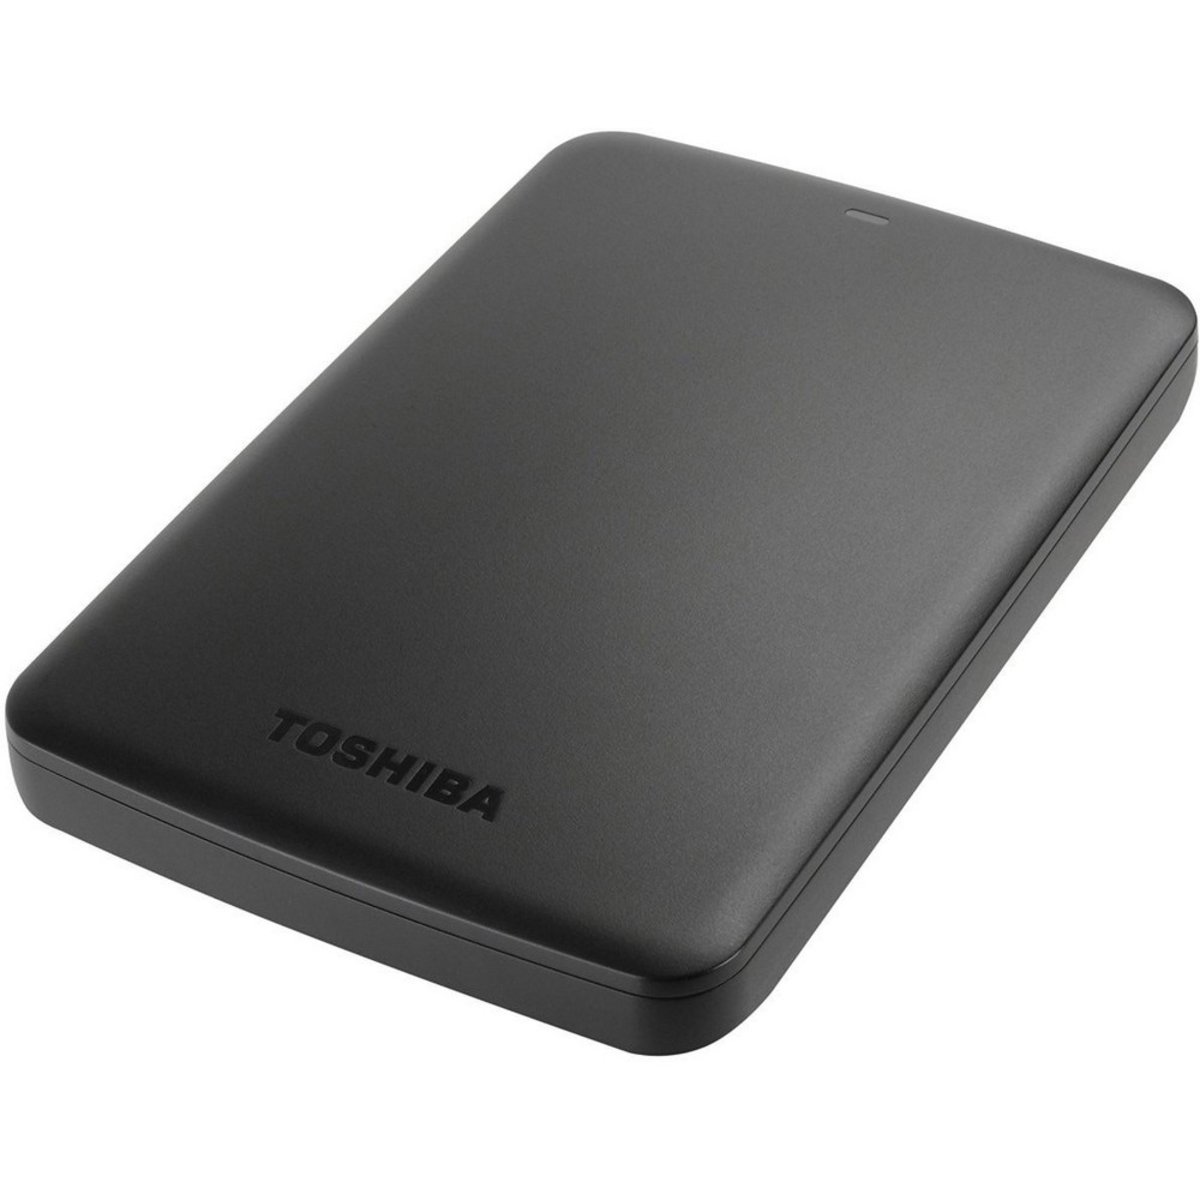 Toshiba External HDD Basics2 1TB